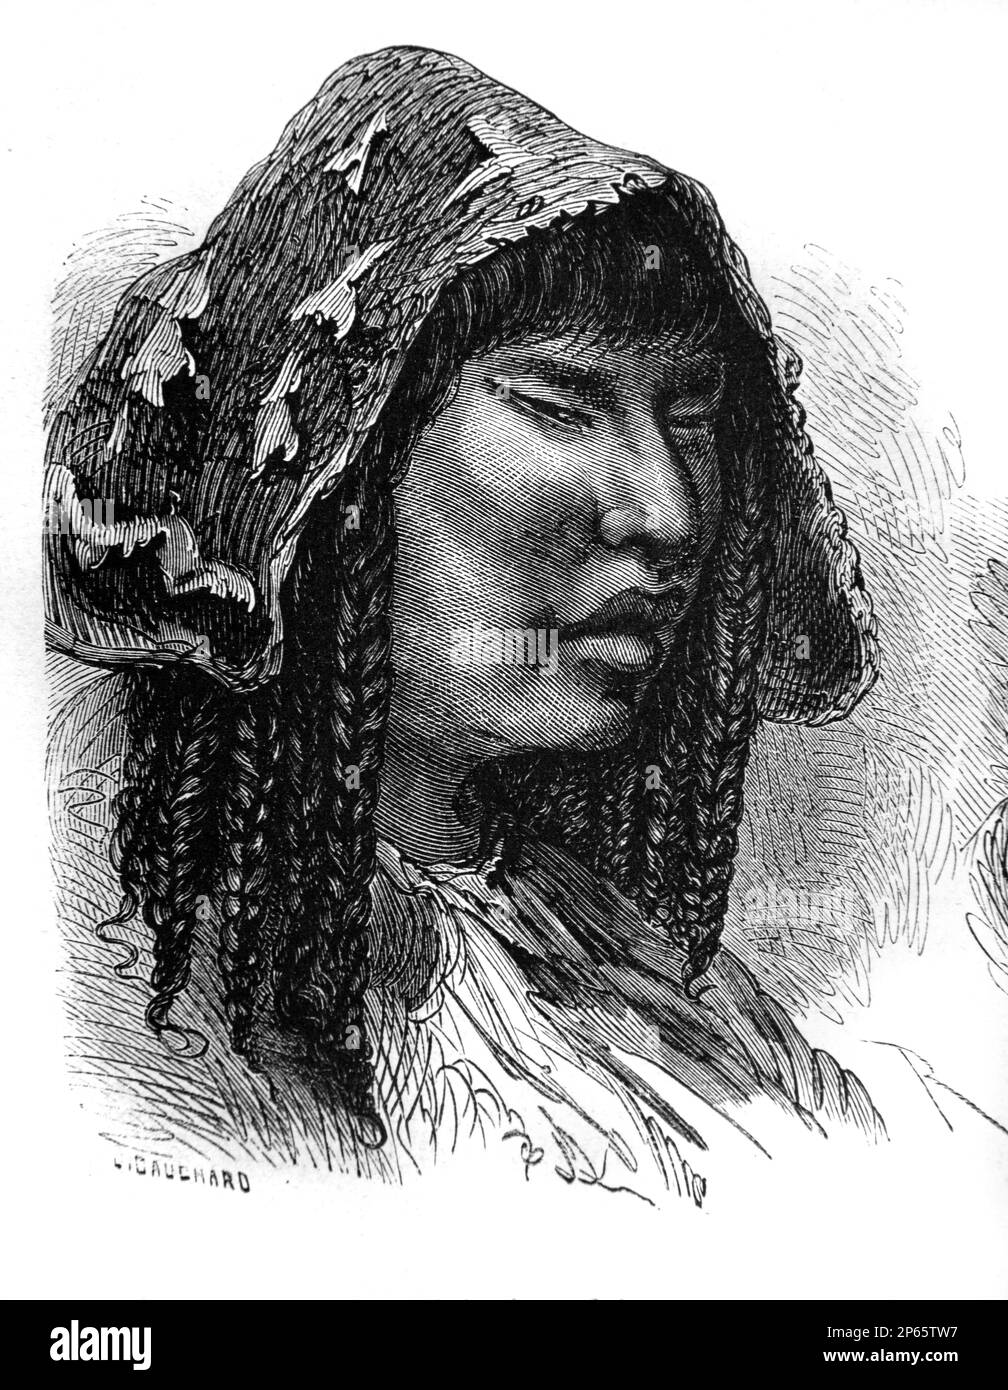 Portrait de la femme quechua, peuple autochtone d'Amérique du Sud, en particulier le Pérou et la Bolivie. Gravure ancienne ou illustration 1862 Banque D'Images